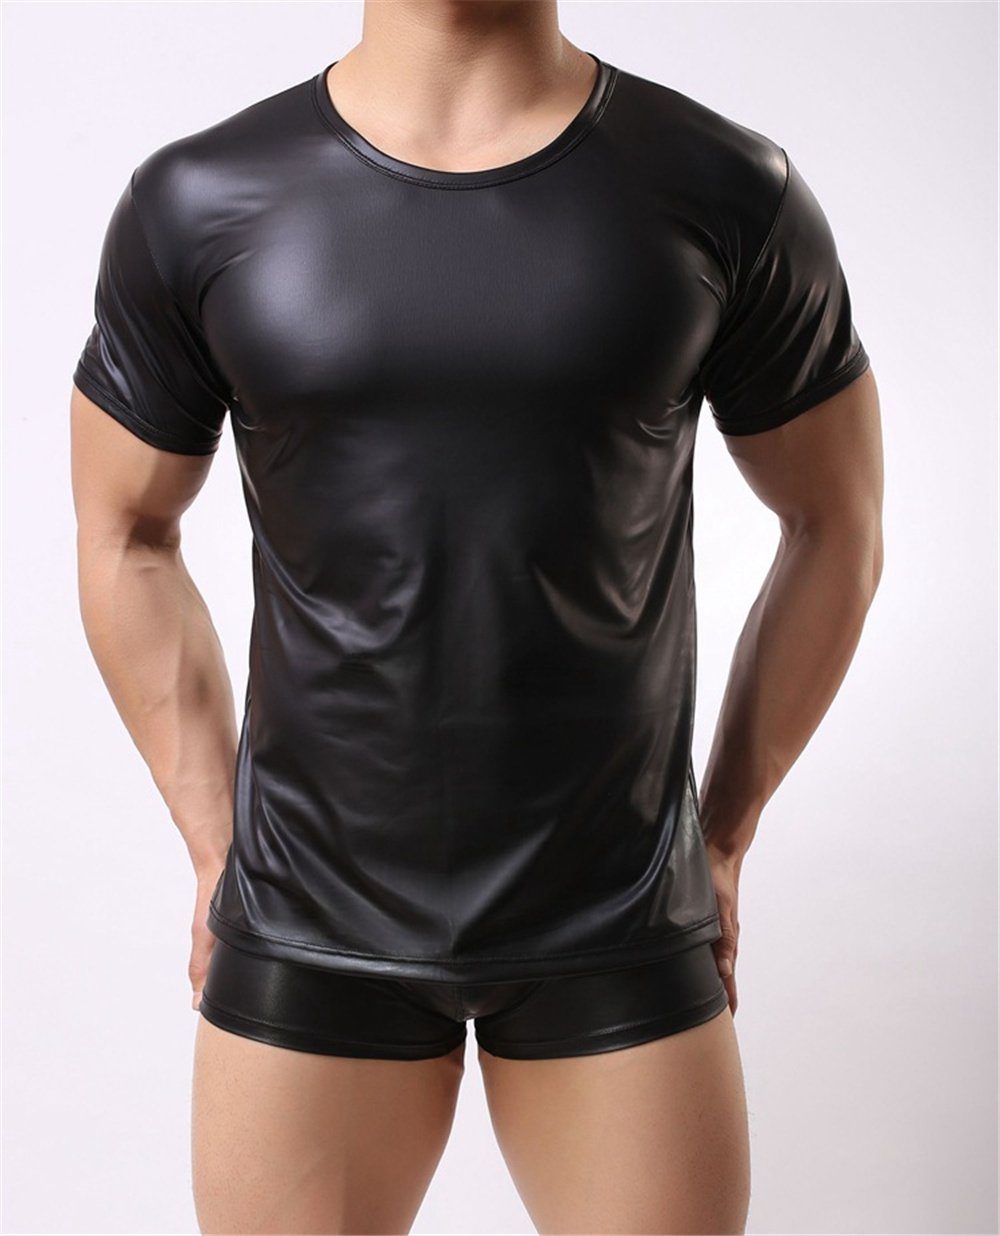 HOTFUN Kurzarmshirt Herren Latex T-Shirt schwarz Leder Optik Männer Shirt  Latex ähnliches